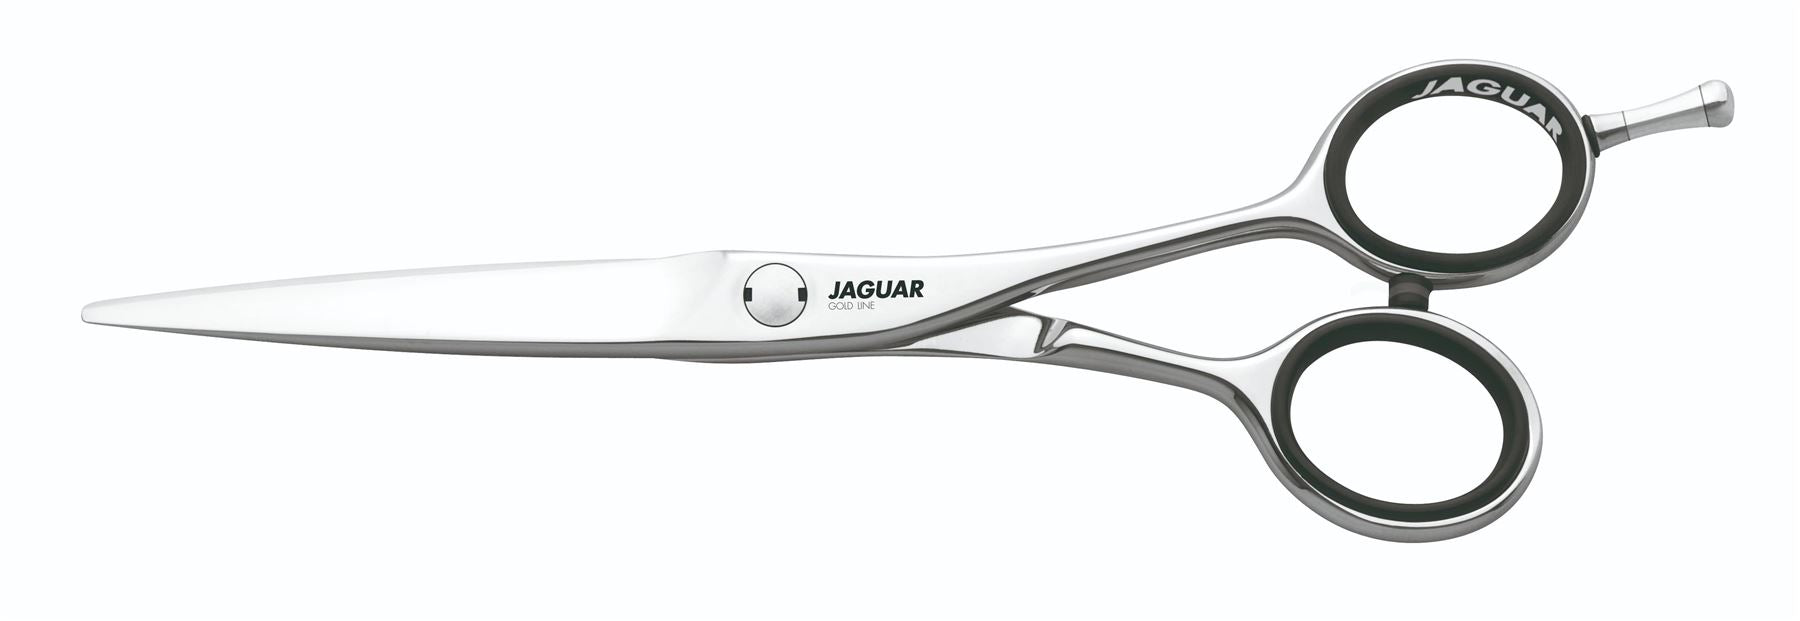 Jaguar Dynasty E Offset 5.75" Hairdressing Scissors - Vanadium Steel